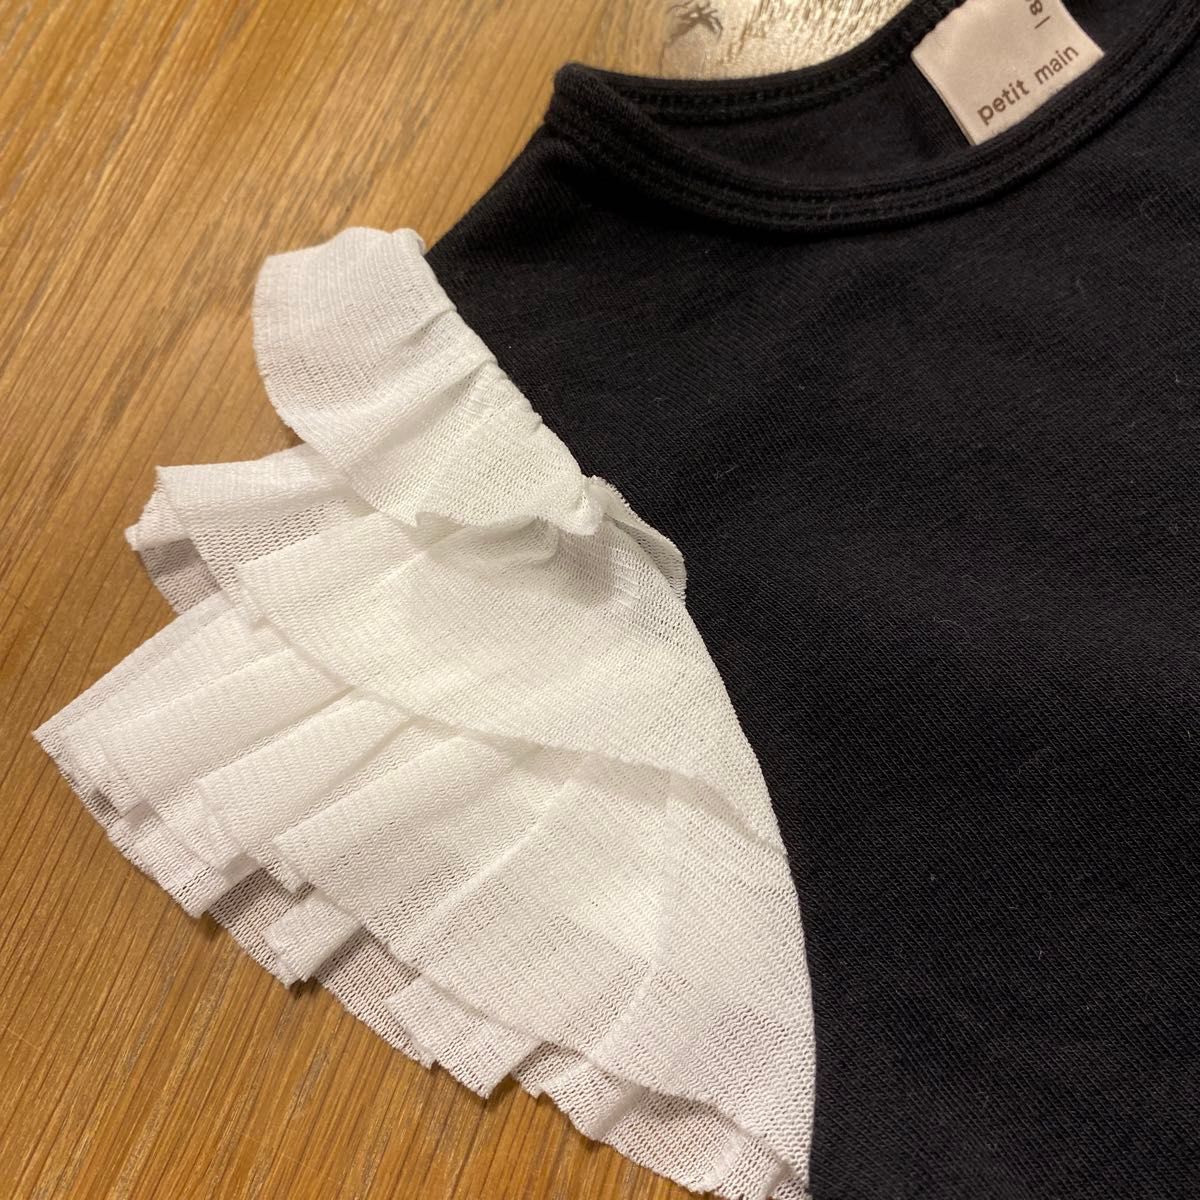 【美品】petit main  フリルTシャツ 80cm 